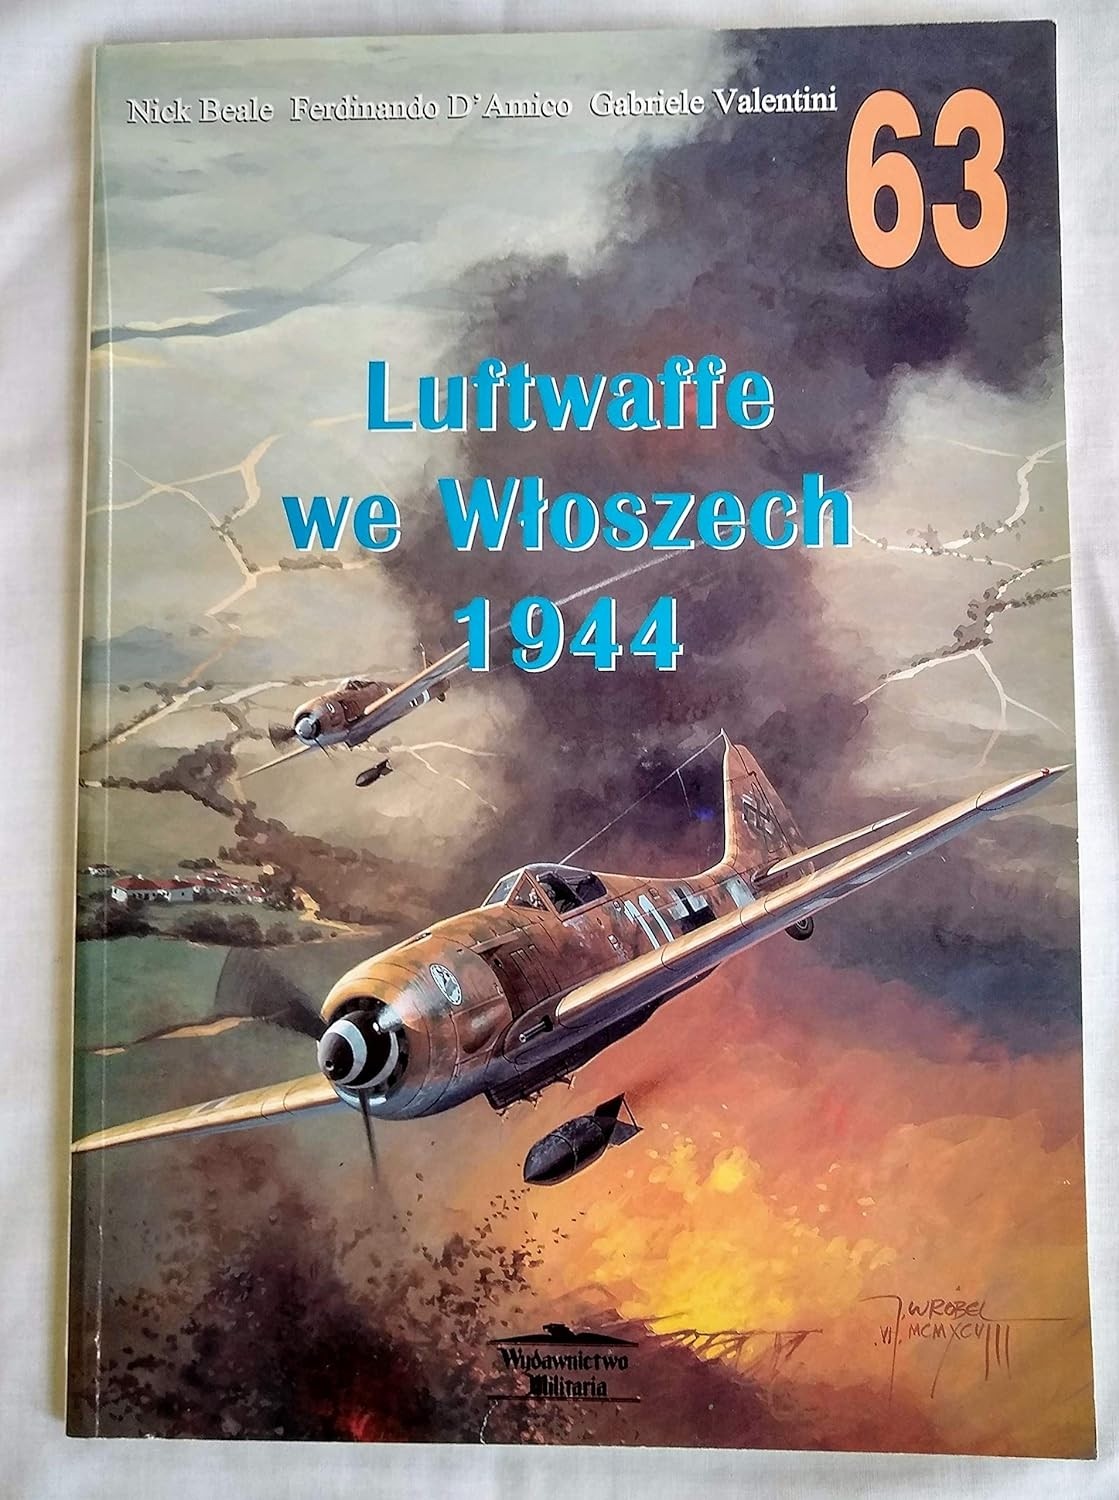 Luftwaffe We Wloszech 1944 (Polish text)